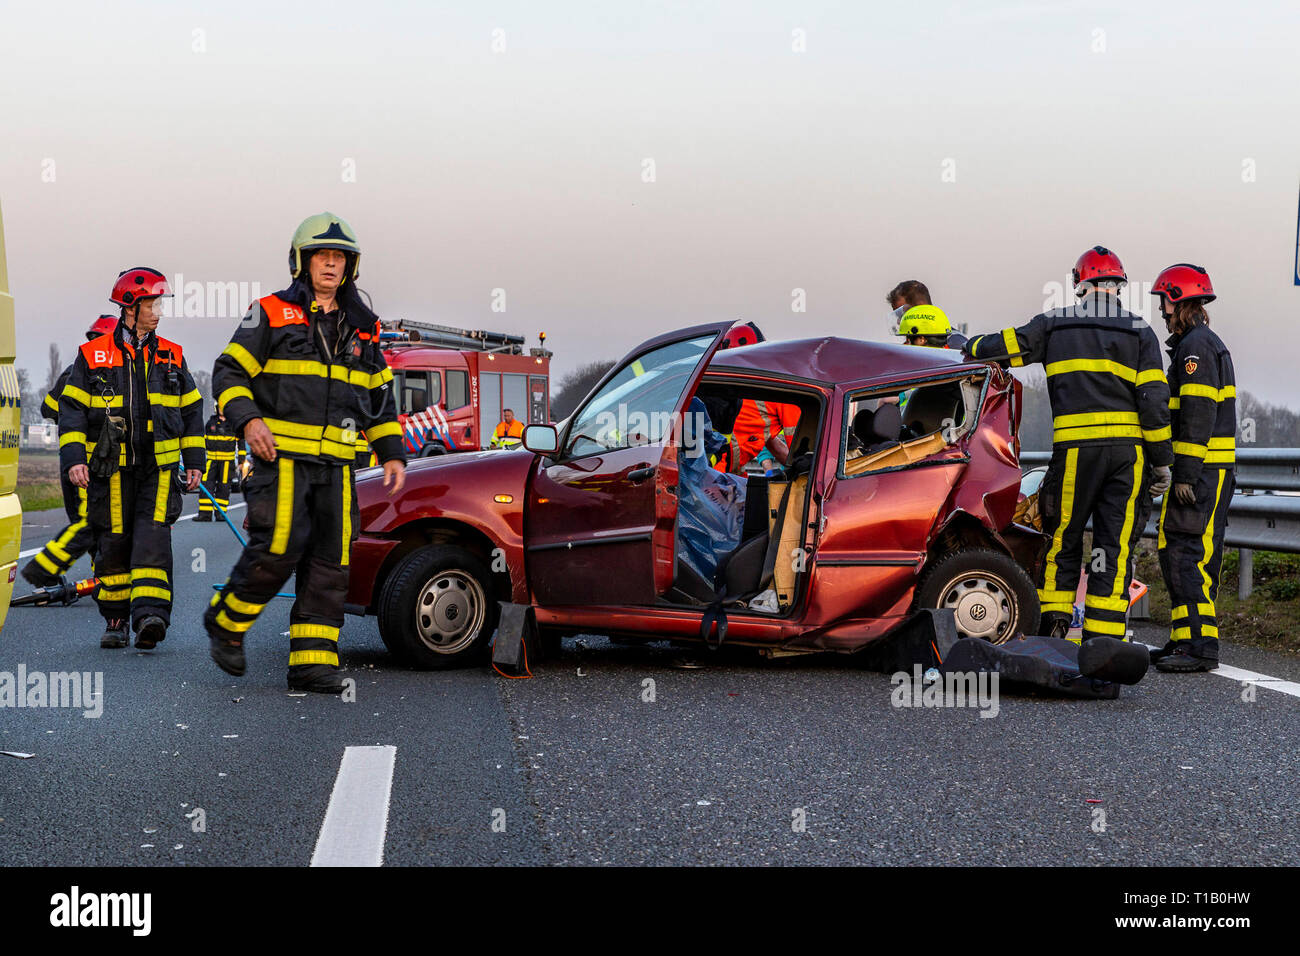 WASPIK, Paesi Bassi, 22-03-2019, binnenlands nieuws, A59, , De un59 tussen Waalwijk en knooppunt Hooipolder zijn vrijdagavond twee ongelukken gebeurd. Daarbij zijn in totaal vier gewonden gevallen. Een auto en een busje botsten tegen elkaar waarbij drie personen in de auto gewond raakten. In de tegenovergestelde richting gebeurde een ongeval in de kijkersfile waarbij nog een gewonde viel, volgens de politie. Foto Stock